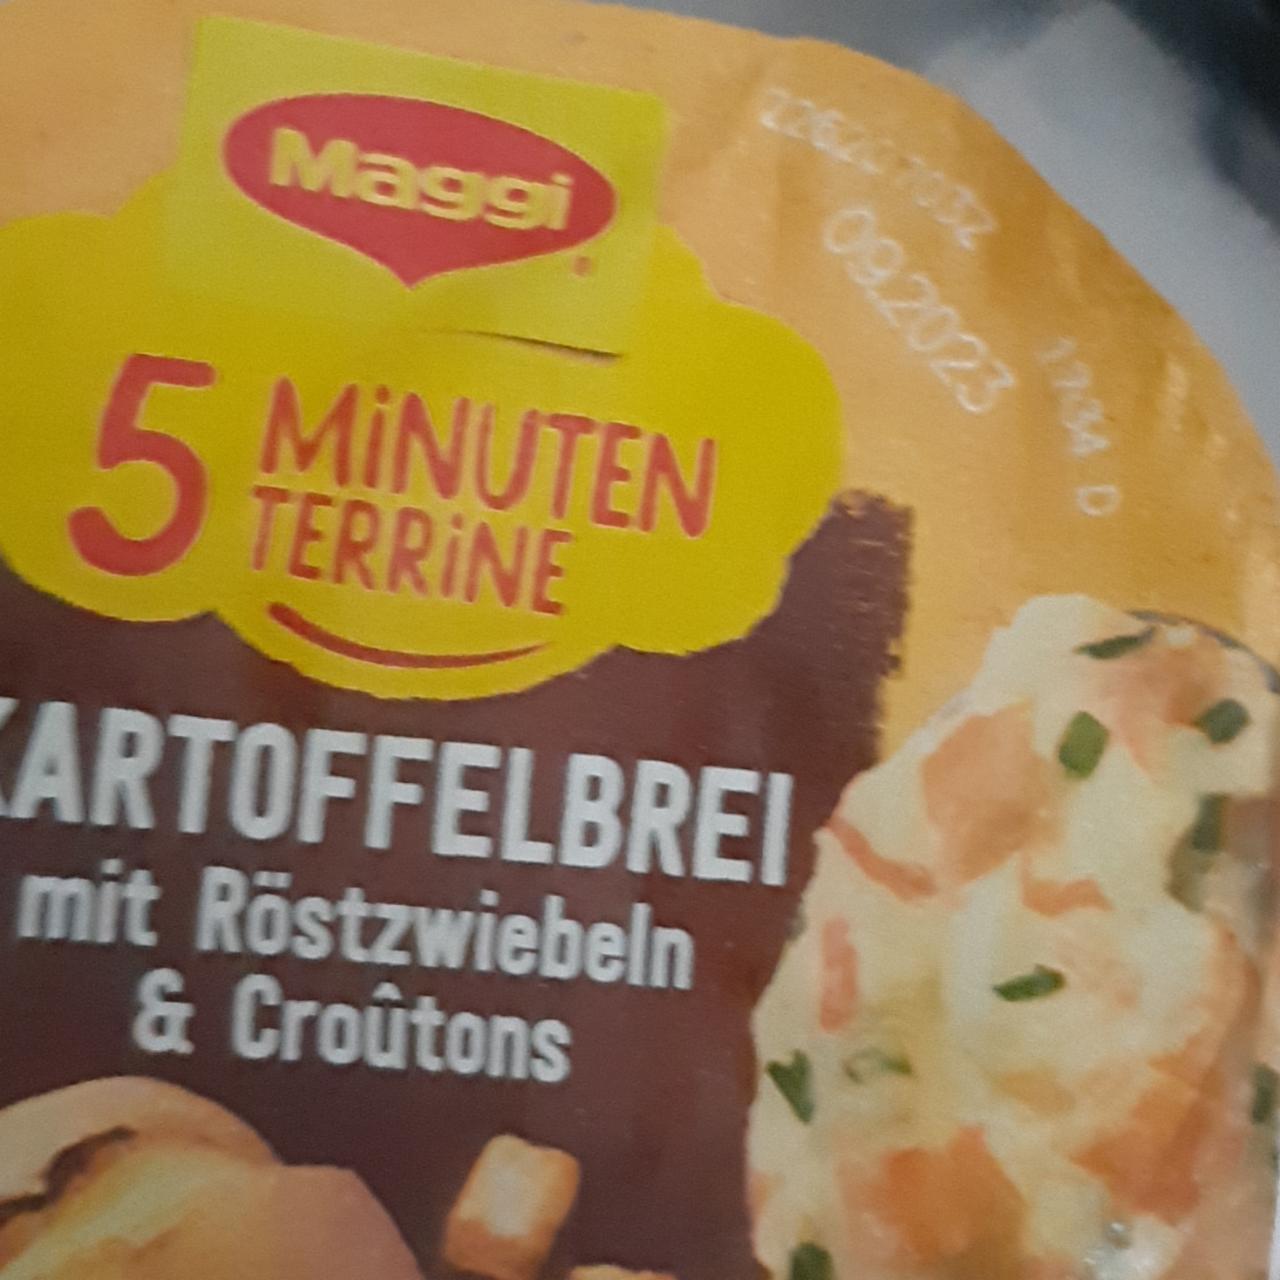 Фото - 5 Minuten Terrine Kartoffelbrei mit Röstzwiebeln & Croûtons Maggi